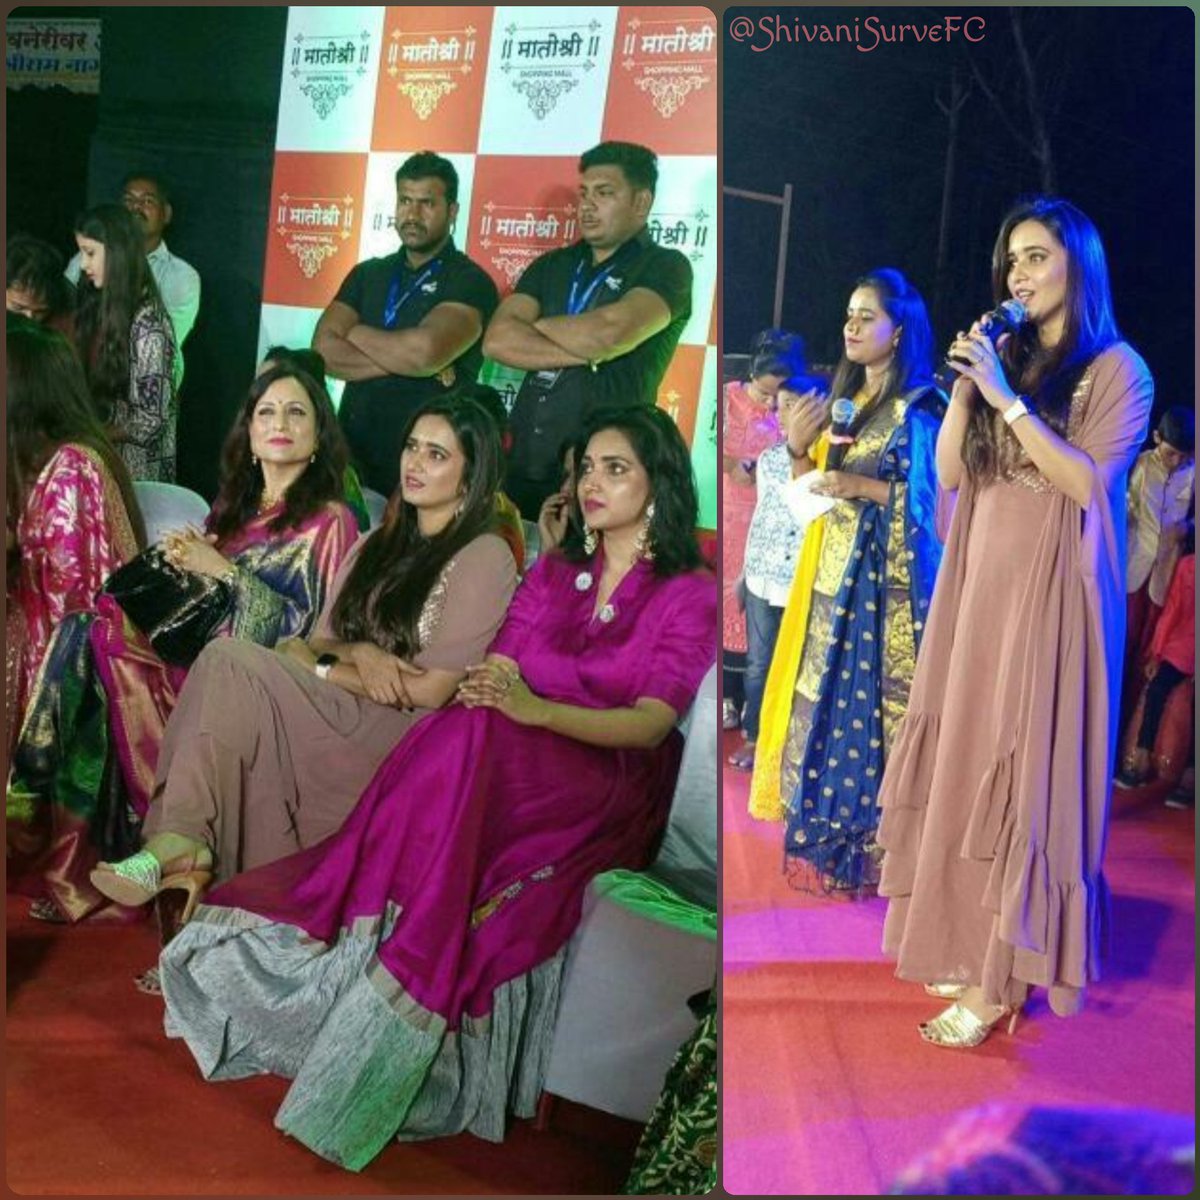 #ShivaniSurve ❤️ #KishoriShahane and #RupaliBhosle 💕 visited #Junnar city for inauguration of #Matoshree_Shopping_Mall 
#Matoshree #Shivanians
@ShivaniSurve29 @GmKishori @bhosle_rupali